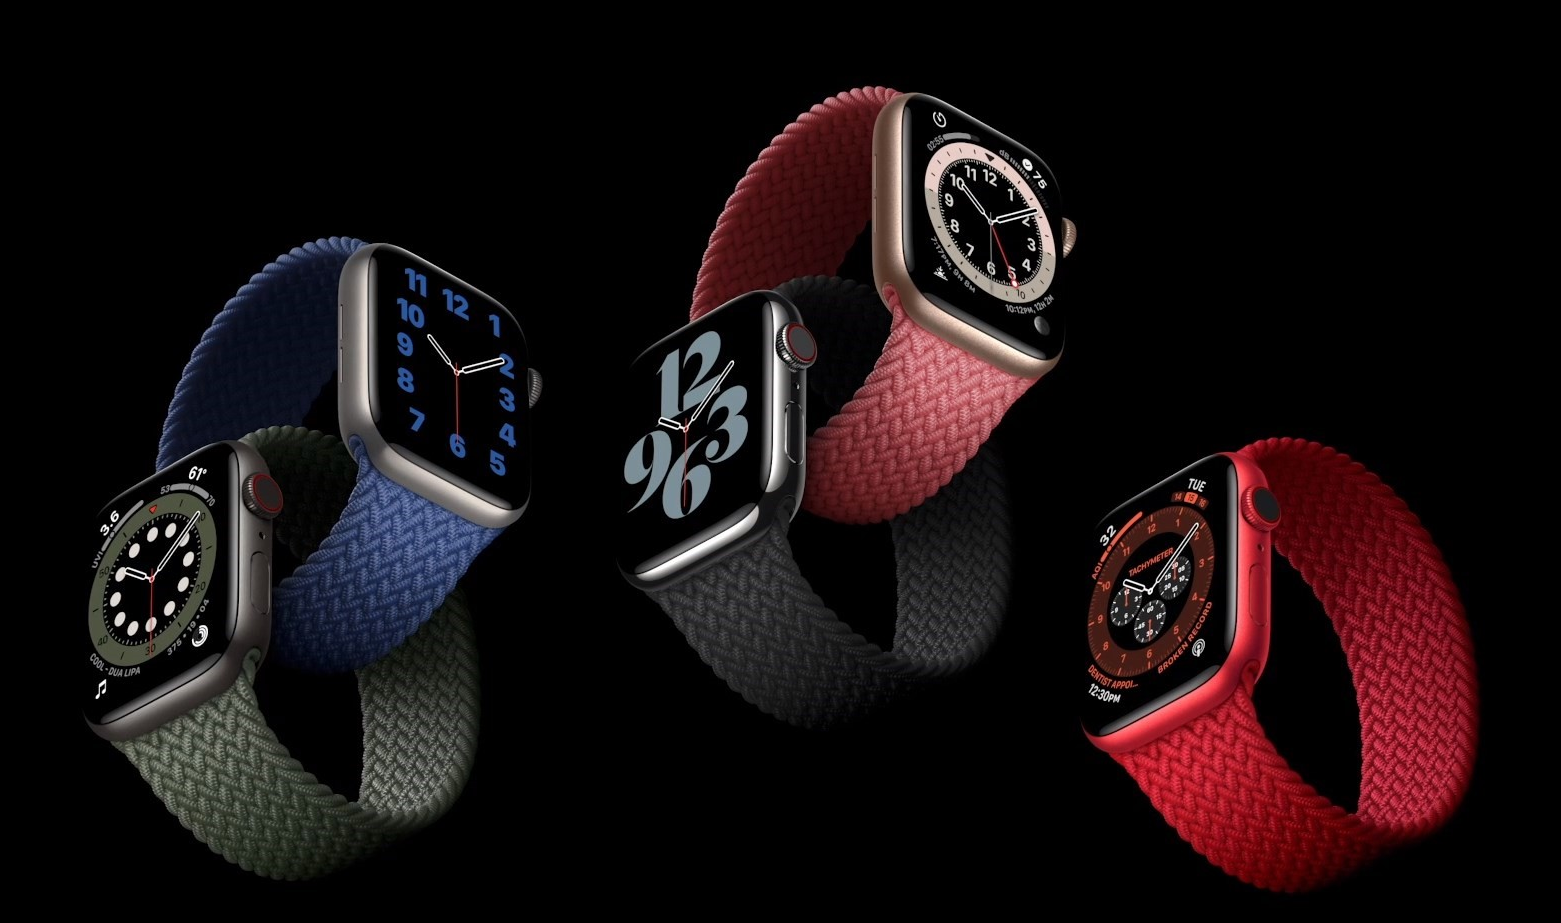 3199元起 Apple Watch 6发布：功能升级